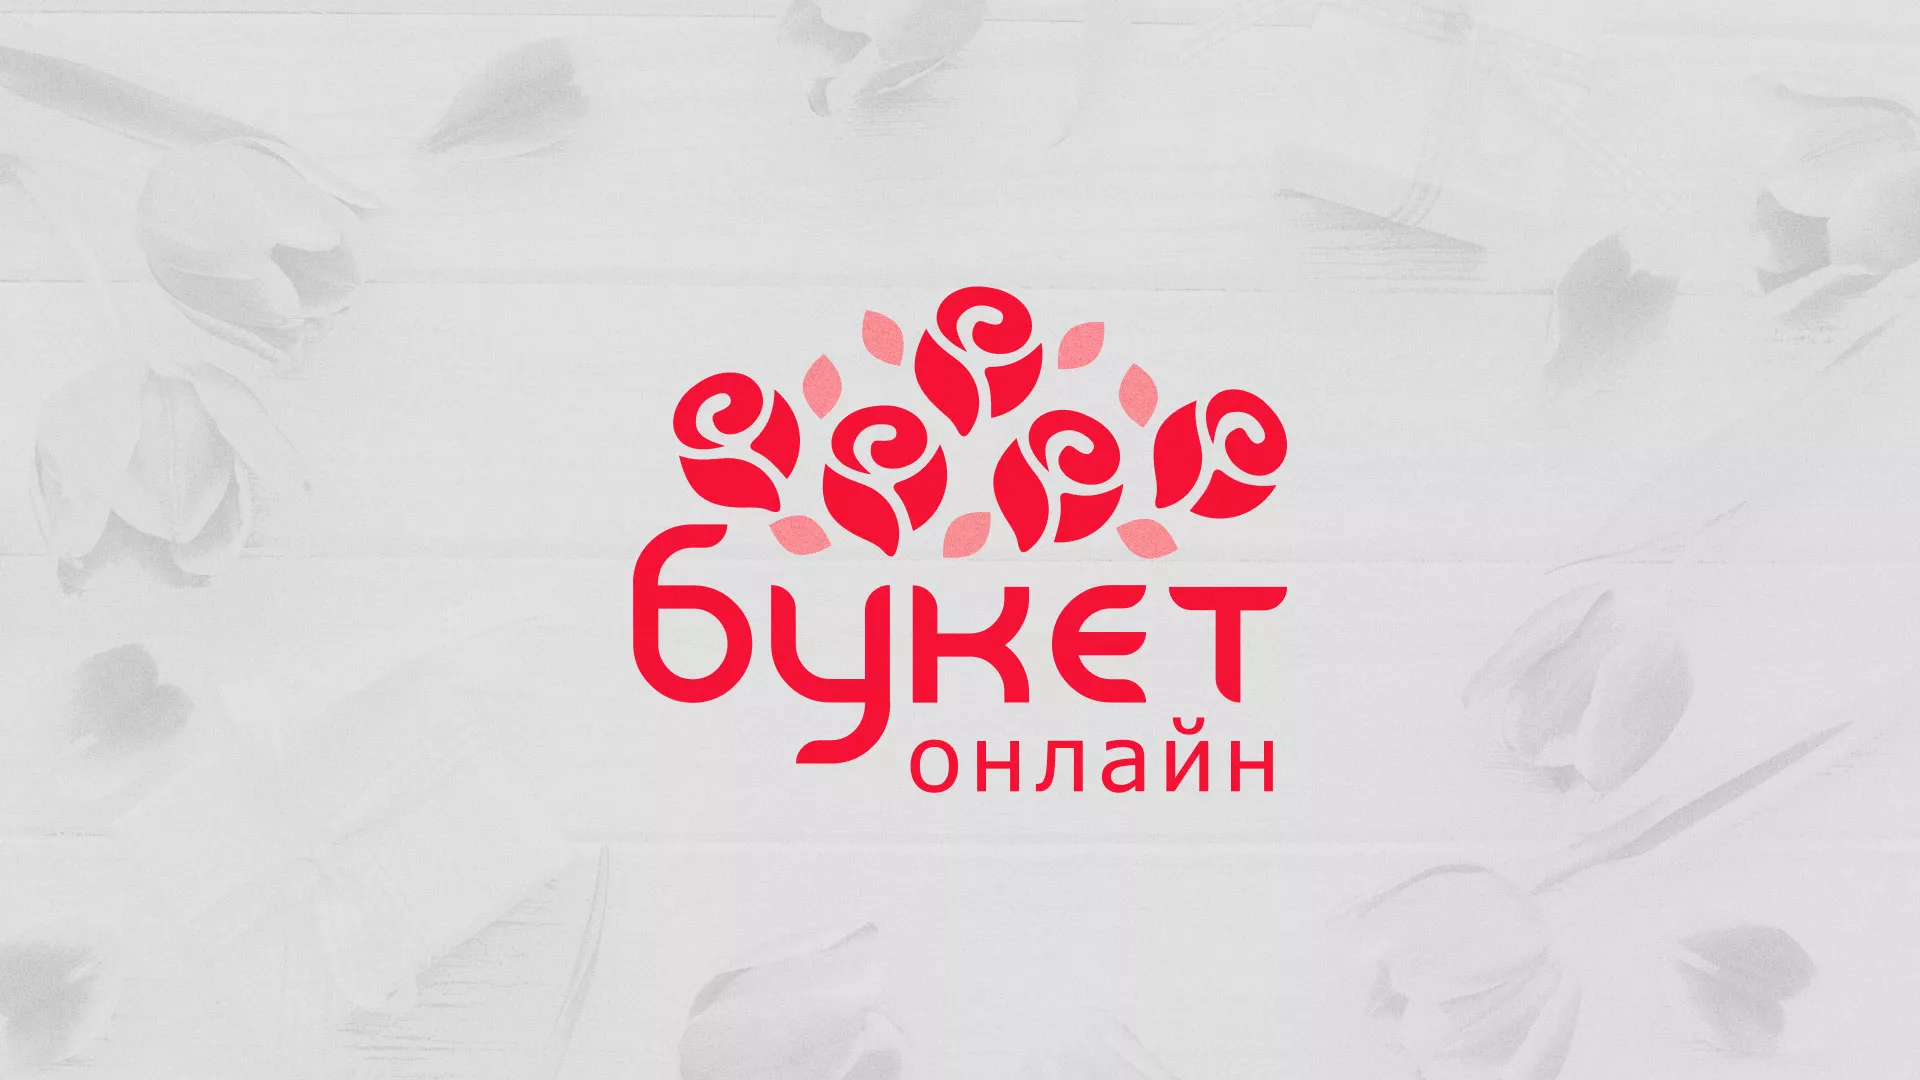 Создание интернет-магазина «Букет-онлайн» по цветам в Оленегорске